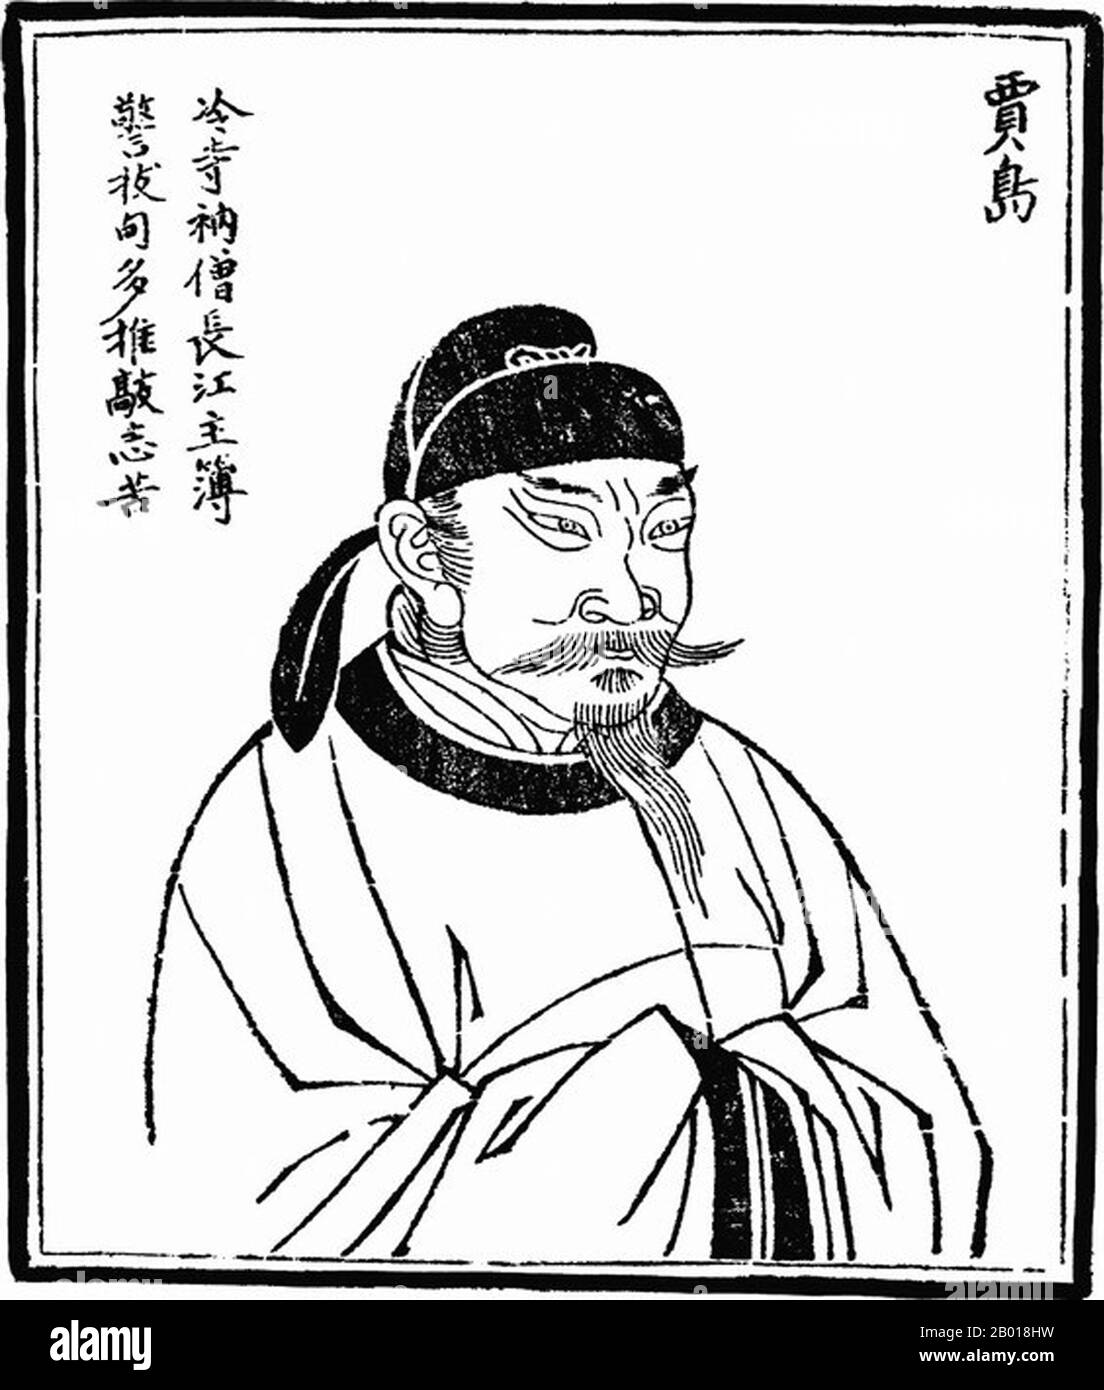 Chine : Jia Dao (779-843), poète et calligraphe de la dynastie Tang. Imprimé en bois de « Images of Ancient People in History », c. 1498. Jia Dao, également épeautre Chia Tao et avec la permission du nom de Langxian, était un poète chinois actif pendant la dynastie Tang. Il est né près de Beijing moderne; après une période de moine bouddhiste, il est allé à Chang'an. Il devint l'un des disciples de Han Yu, mais échoua plusieurs fois l'examen jinshi. Il a écrit à la fois le gushi discursif et le jintishi lyrique. Ses œuvres ont été considérées comme « minces » par su Shi, et d'autres commentateurs les ont considérées comme limitées et artificielles. Banque D'Images